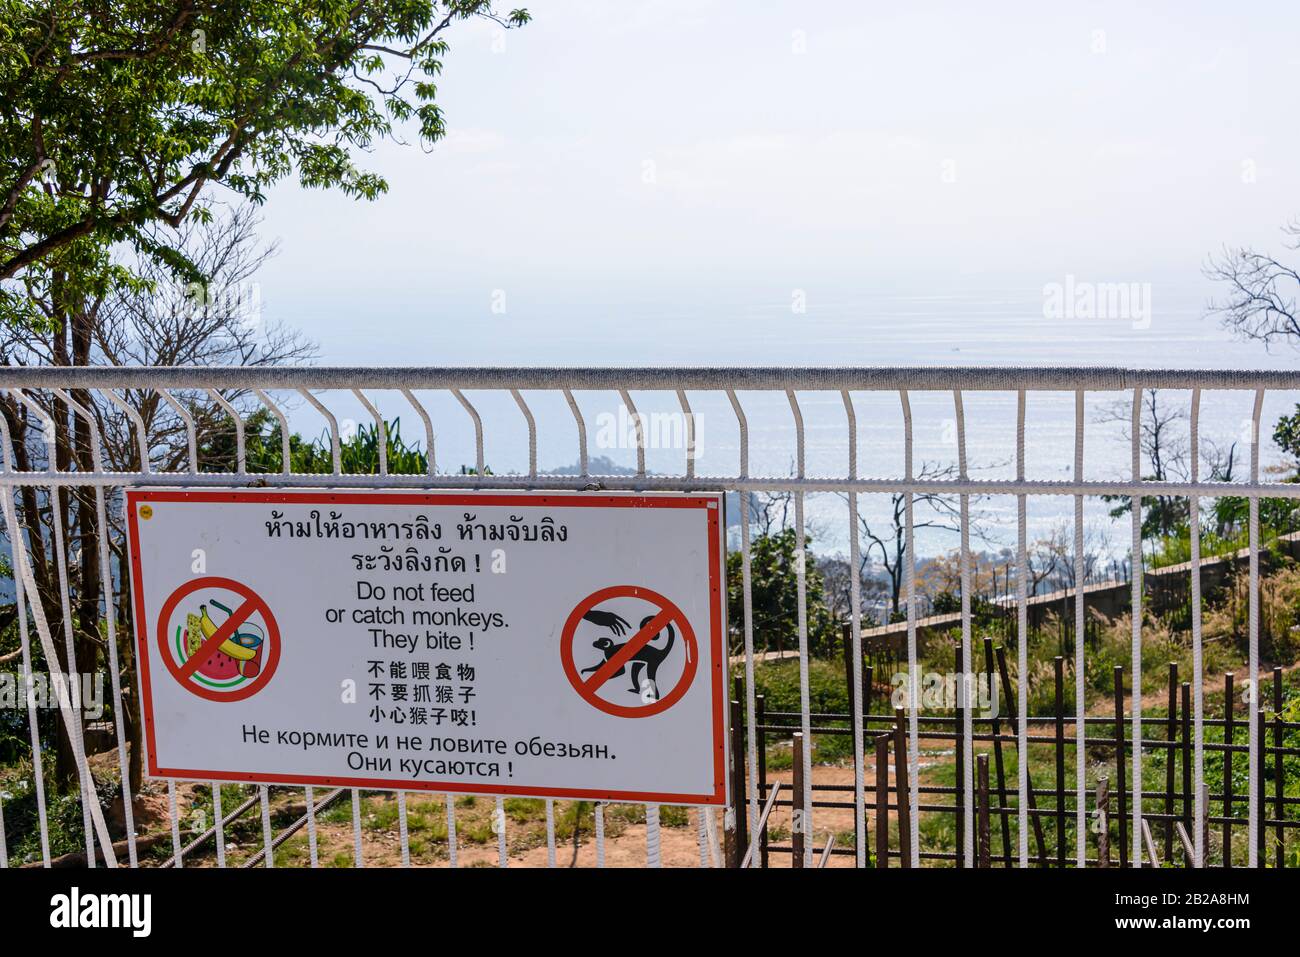 Segnale di avvertimento turisti a non nutrire o prendere le scimmie come mordono, in tailandese, inglese, cinese e russo, Thailandia Foto Stock